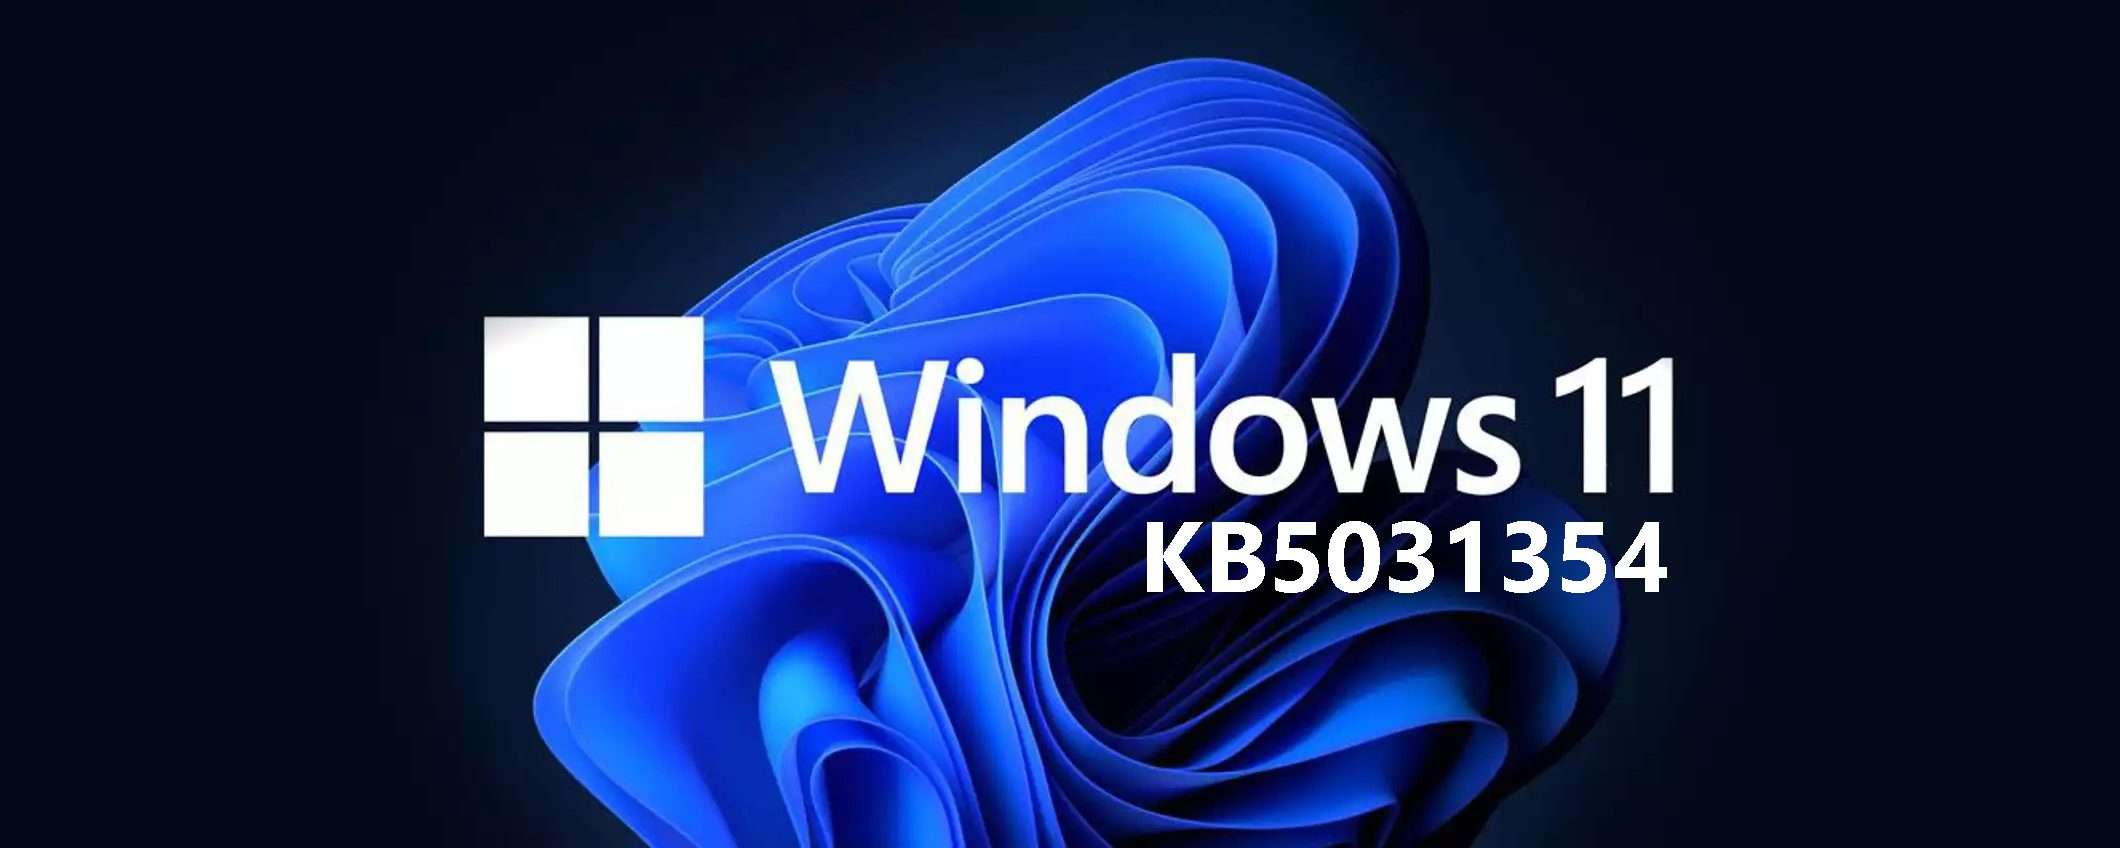 Windows 11 KB5031354: Moment 4 per tutti